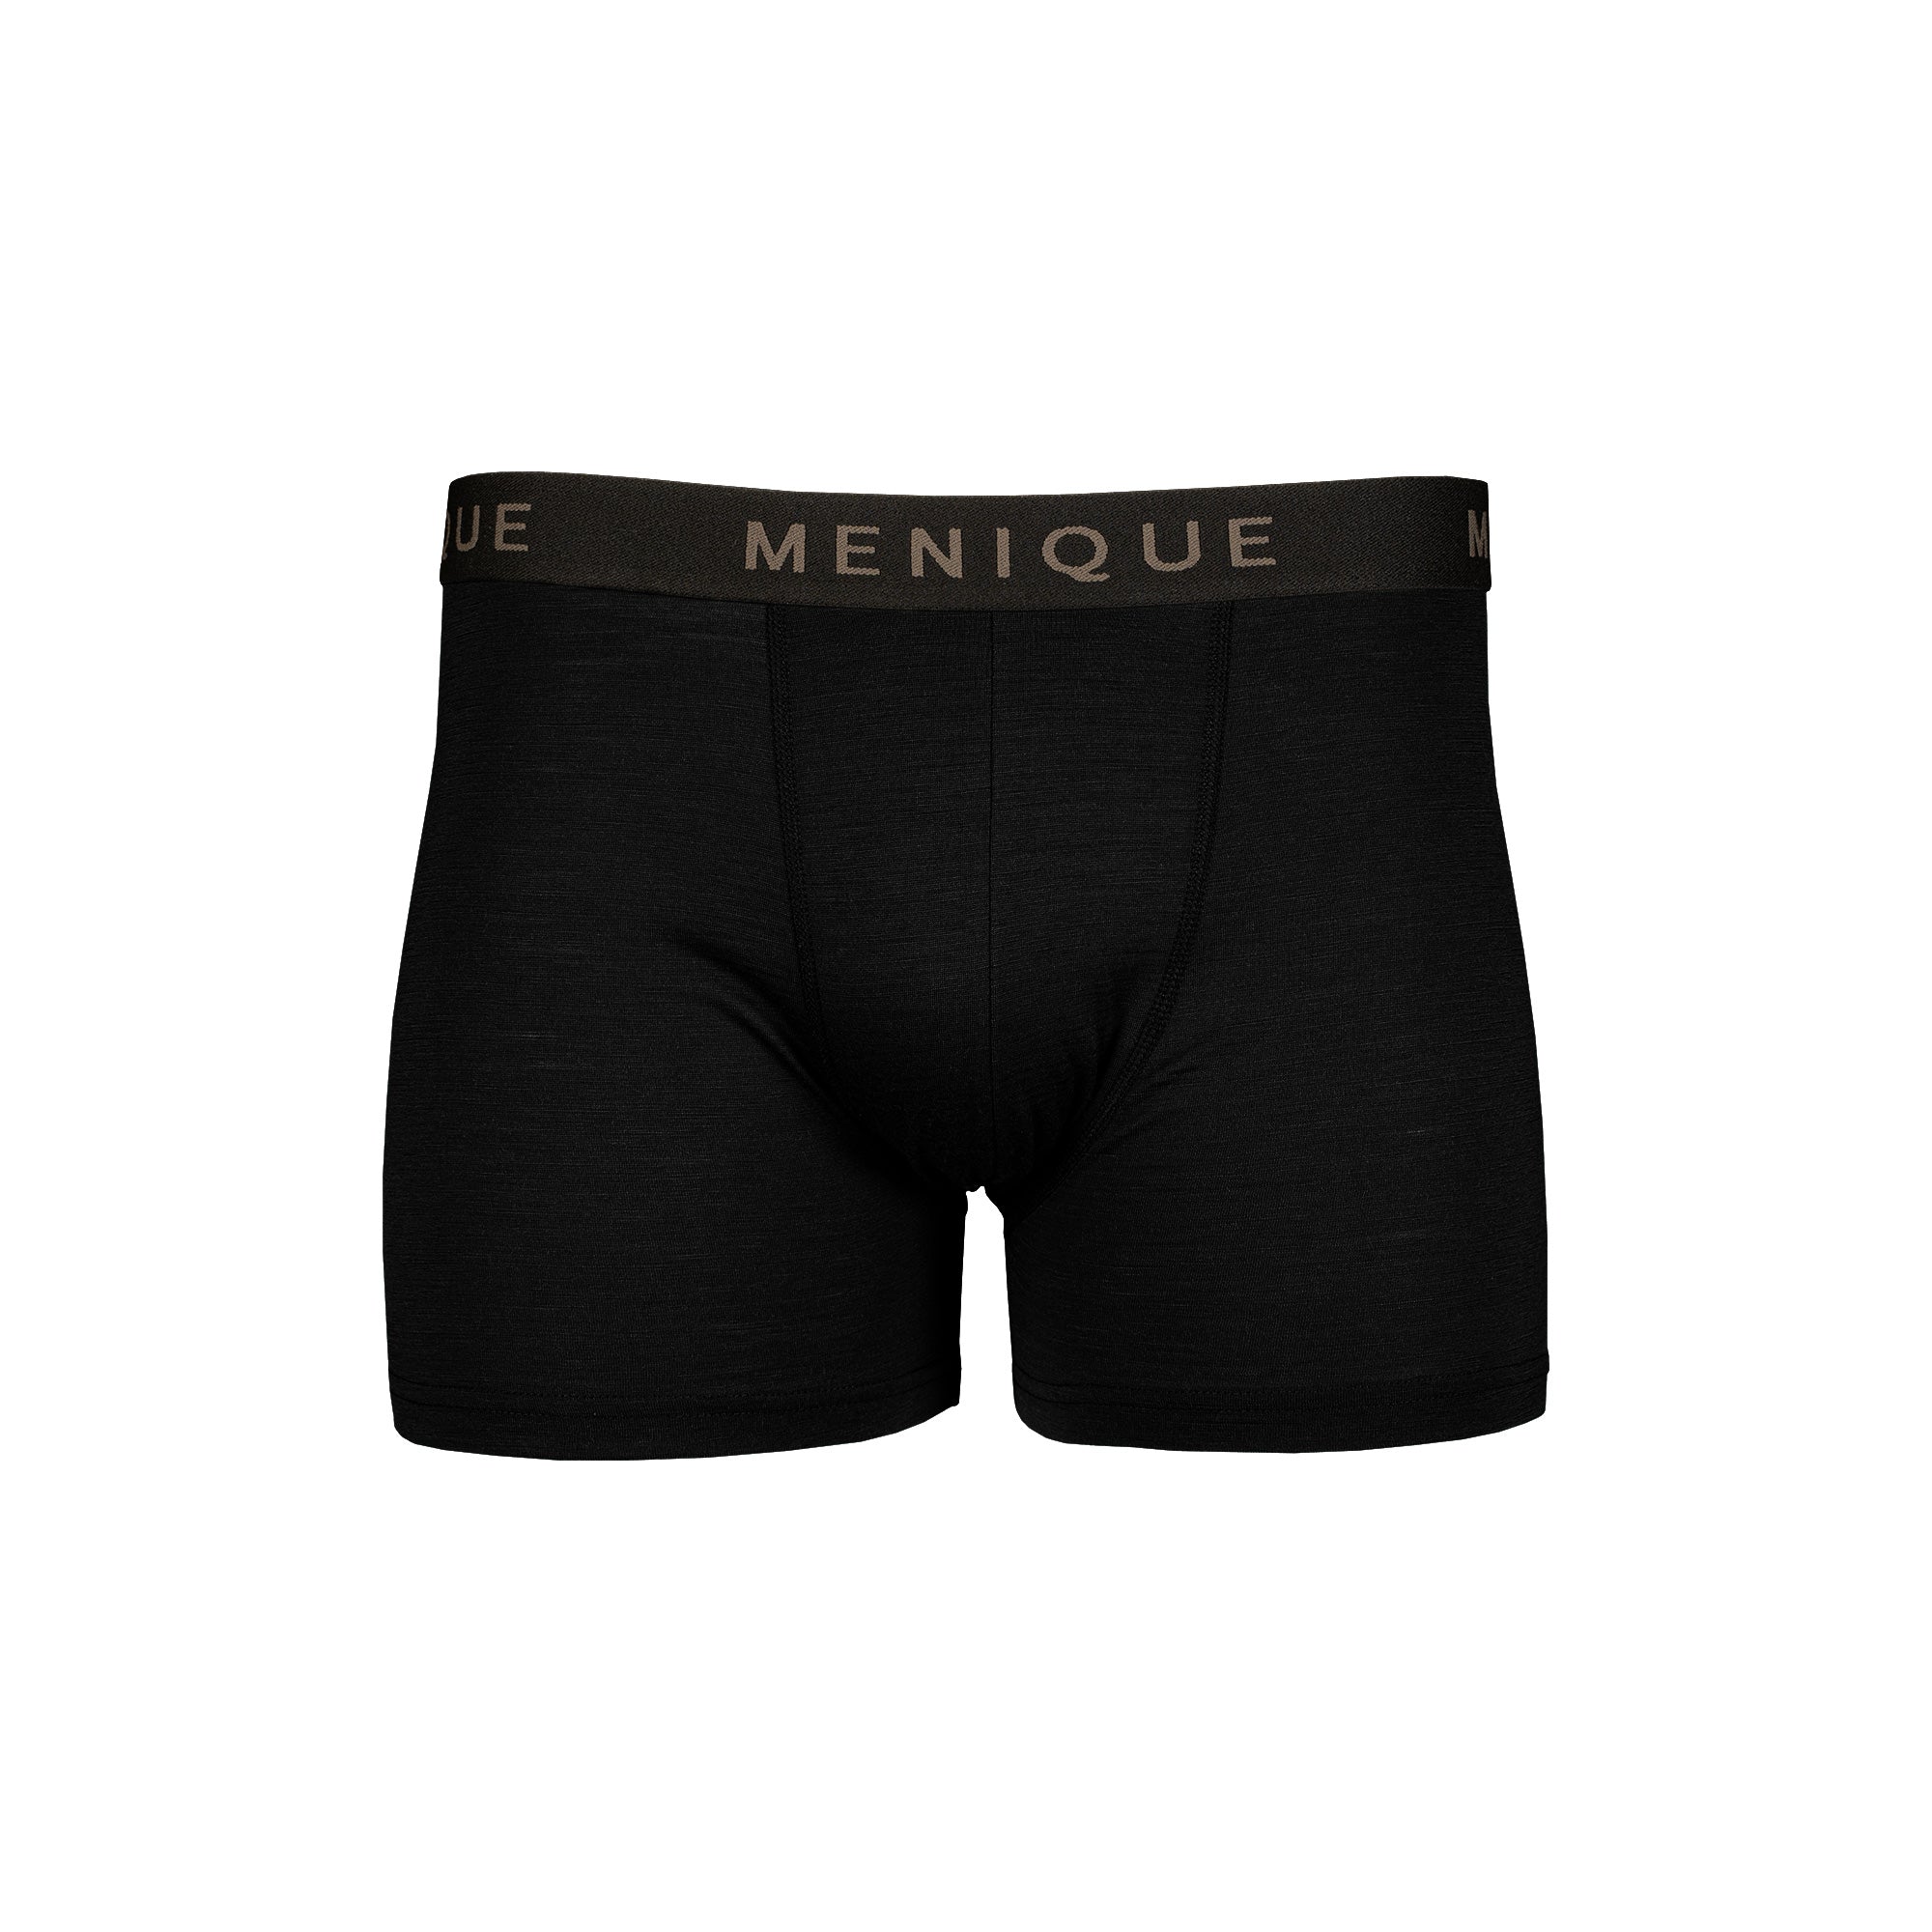 Men's Underwear Boxer Shorts 2-Pack ❤️ menique